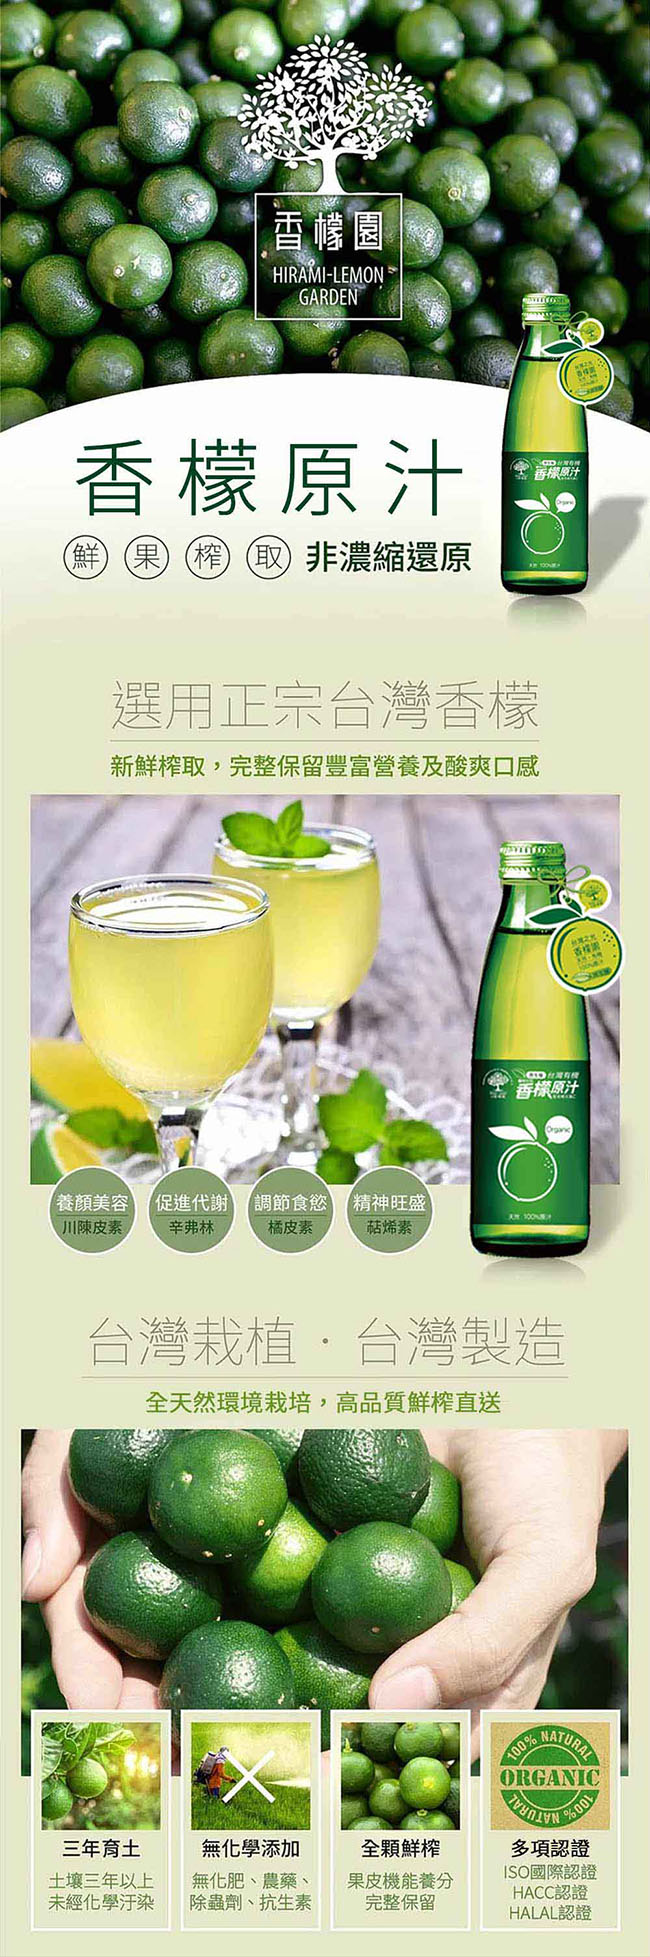 【香檬園】台灣原生種有機香檬原汁6入+香檬3比8水噹噹x3盒